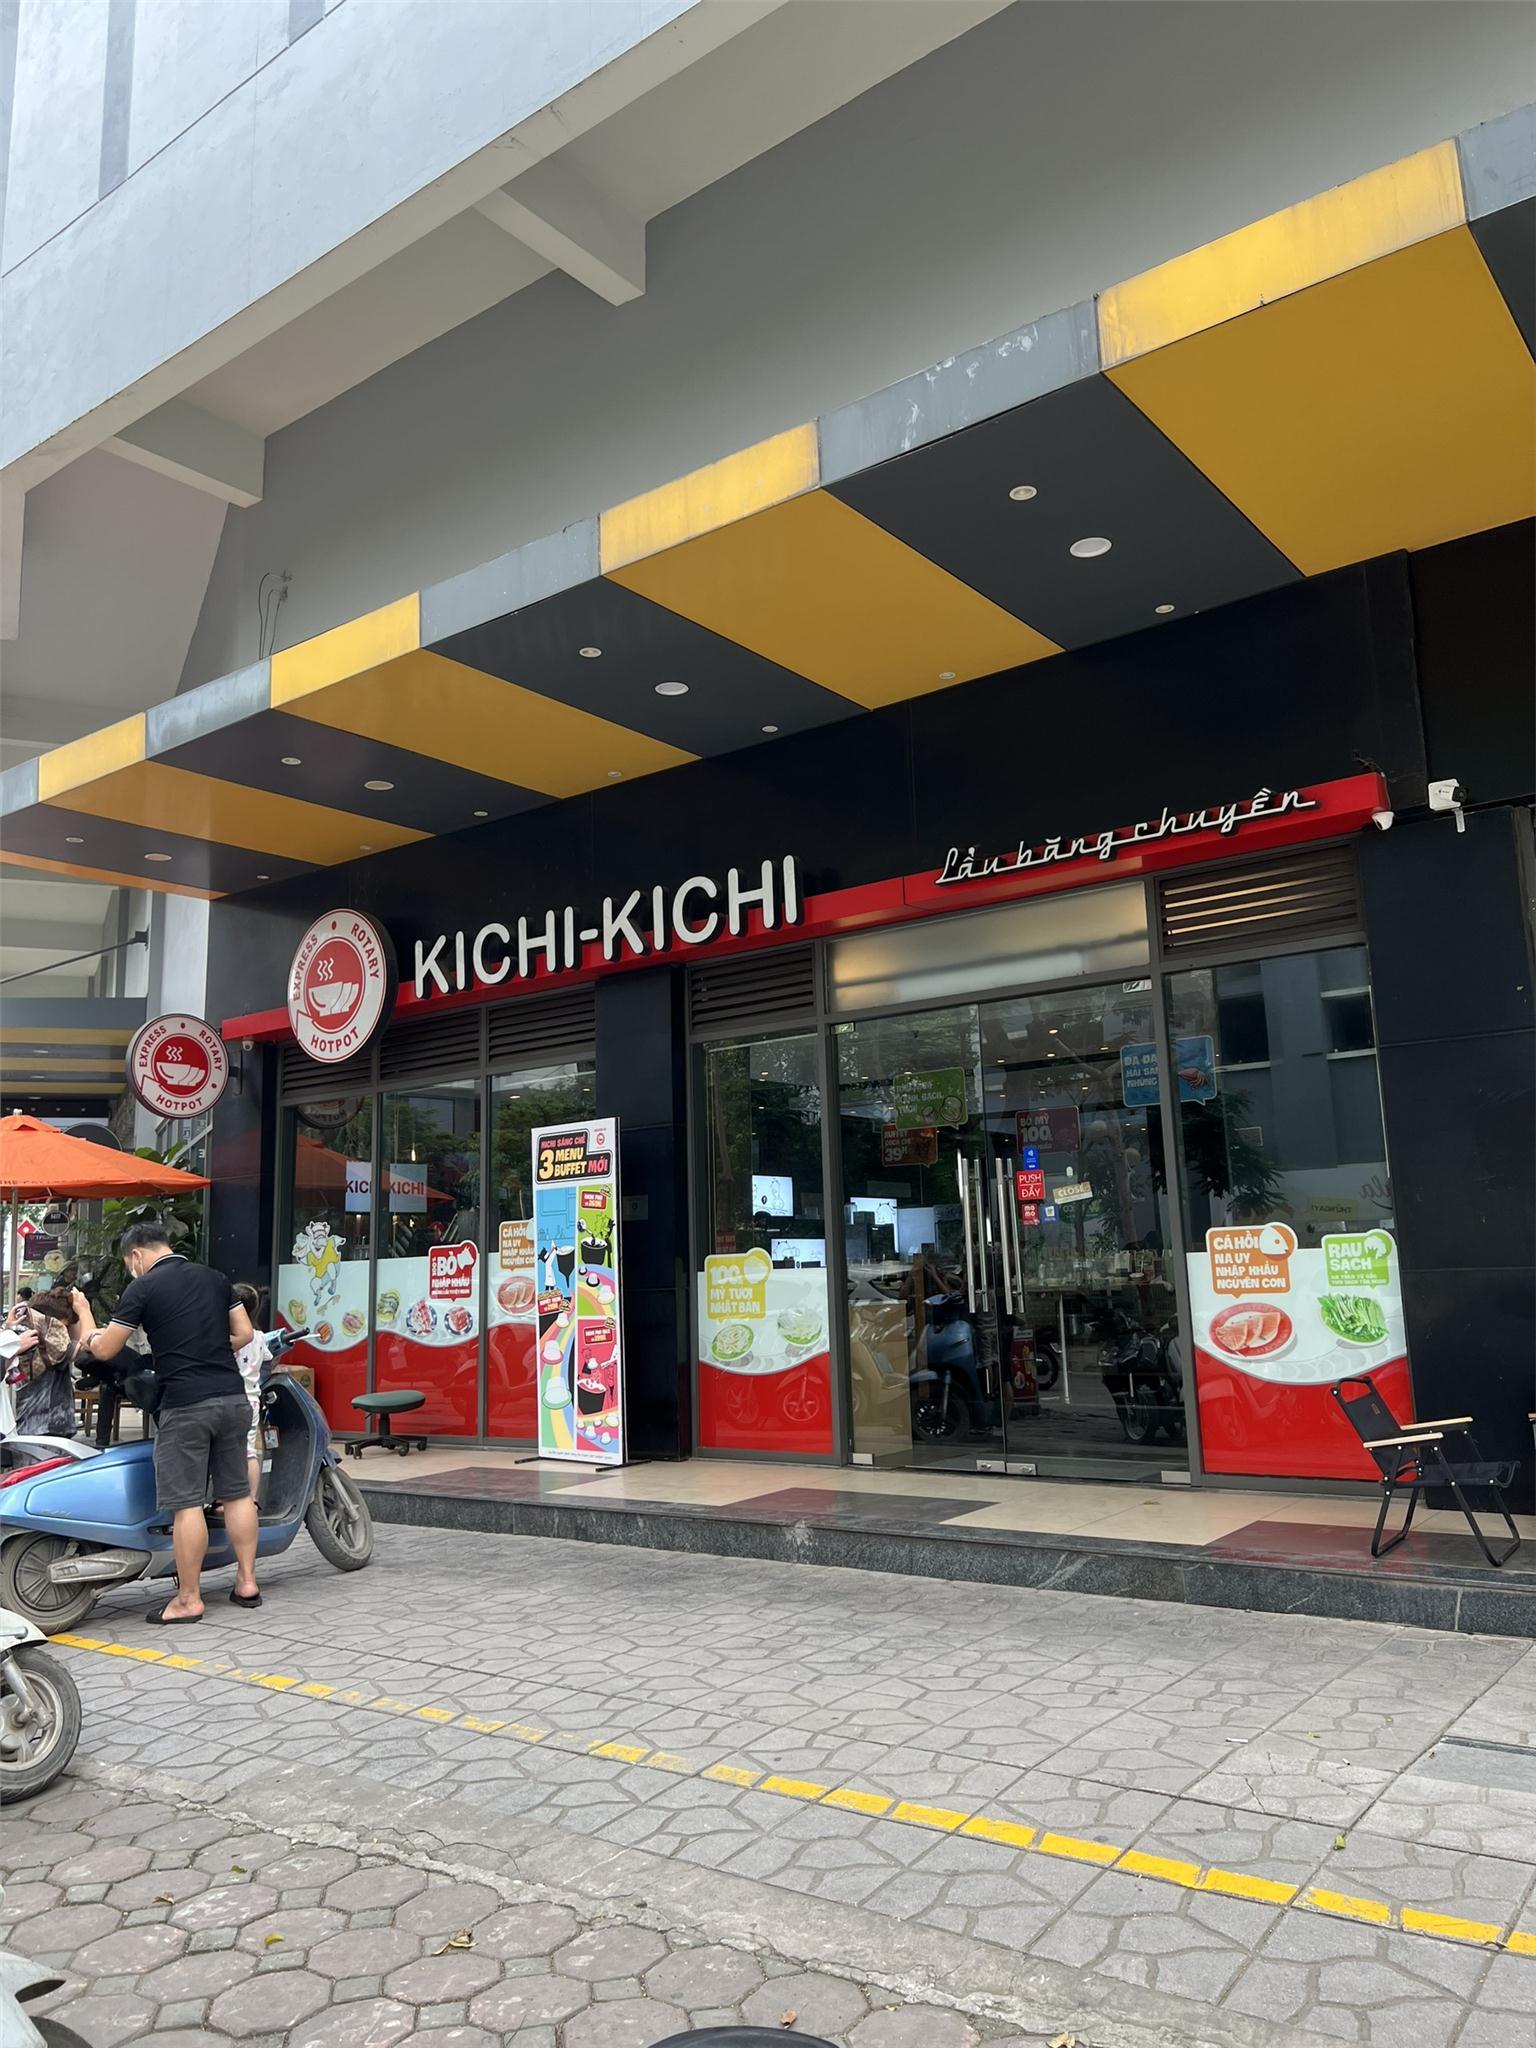 Bán Shophouse Chân Khối Đế Rice City Linh Đàm Đang cho Kichikichi thuê 156m2 - Ảnh 3